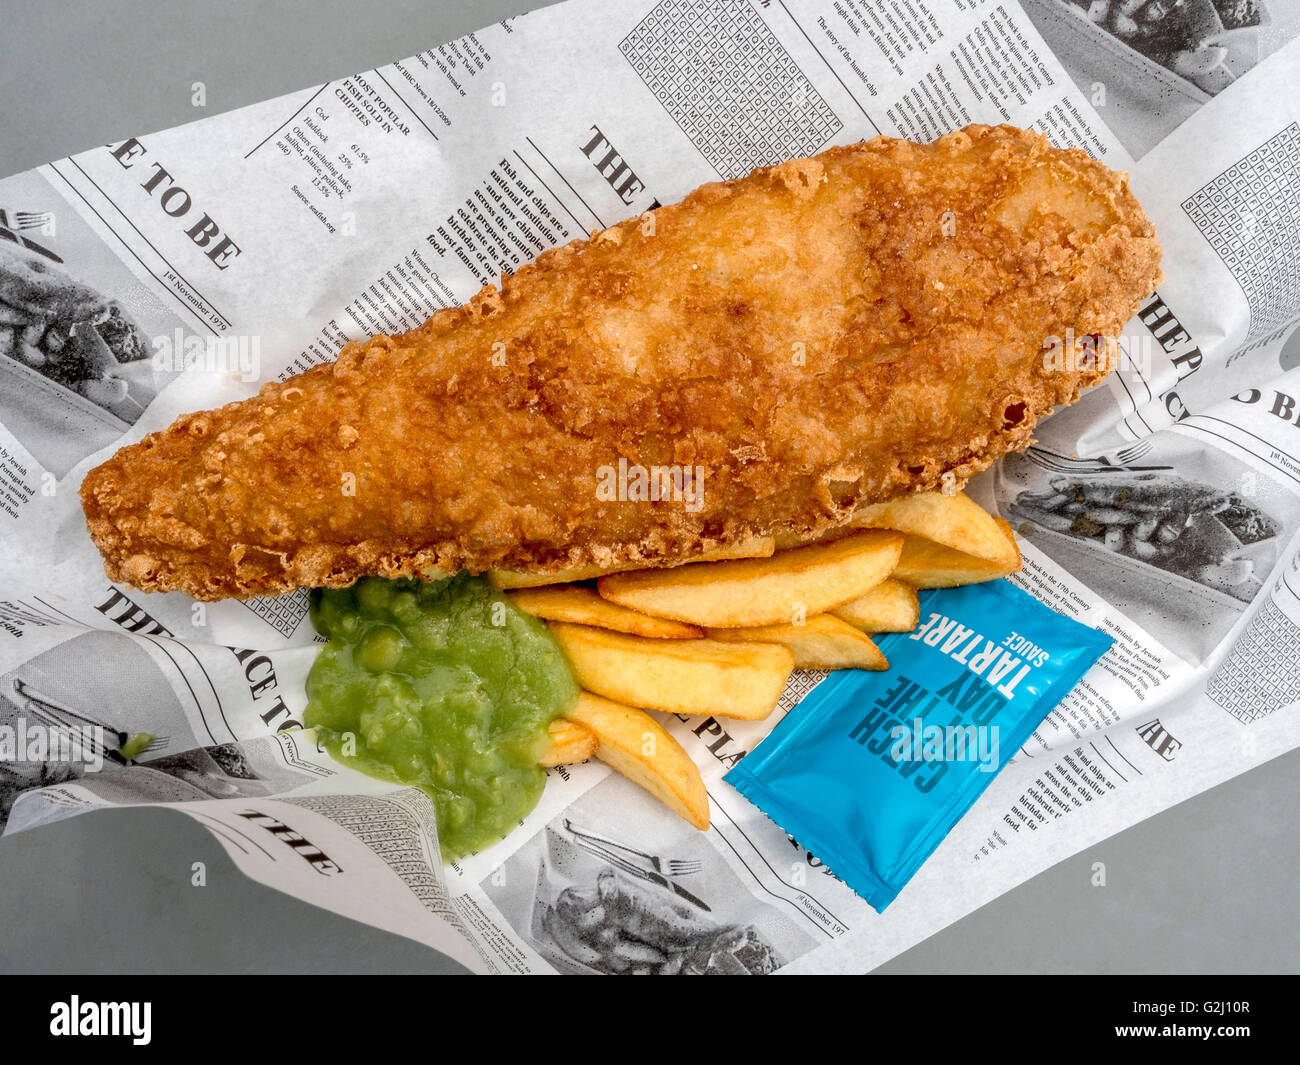 Fish and chips, des aliments typiquement britannique, Royaume-Uni, Europe Banque D'Images